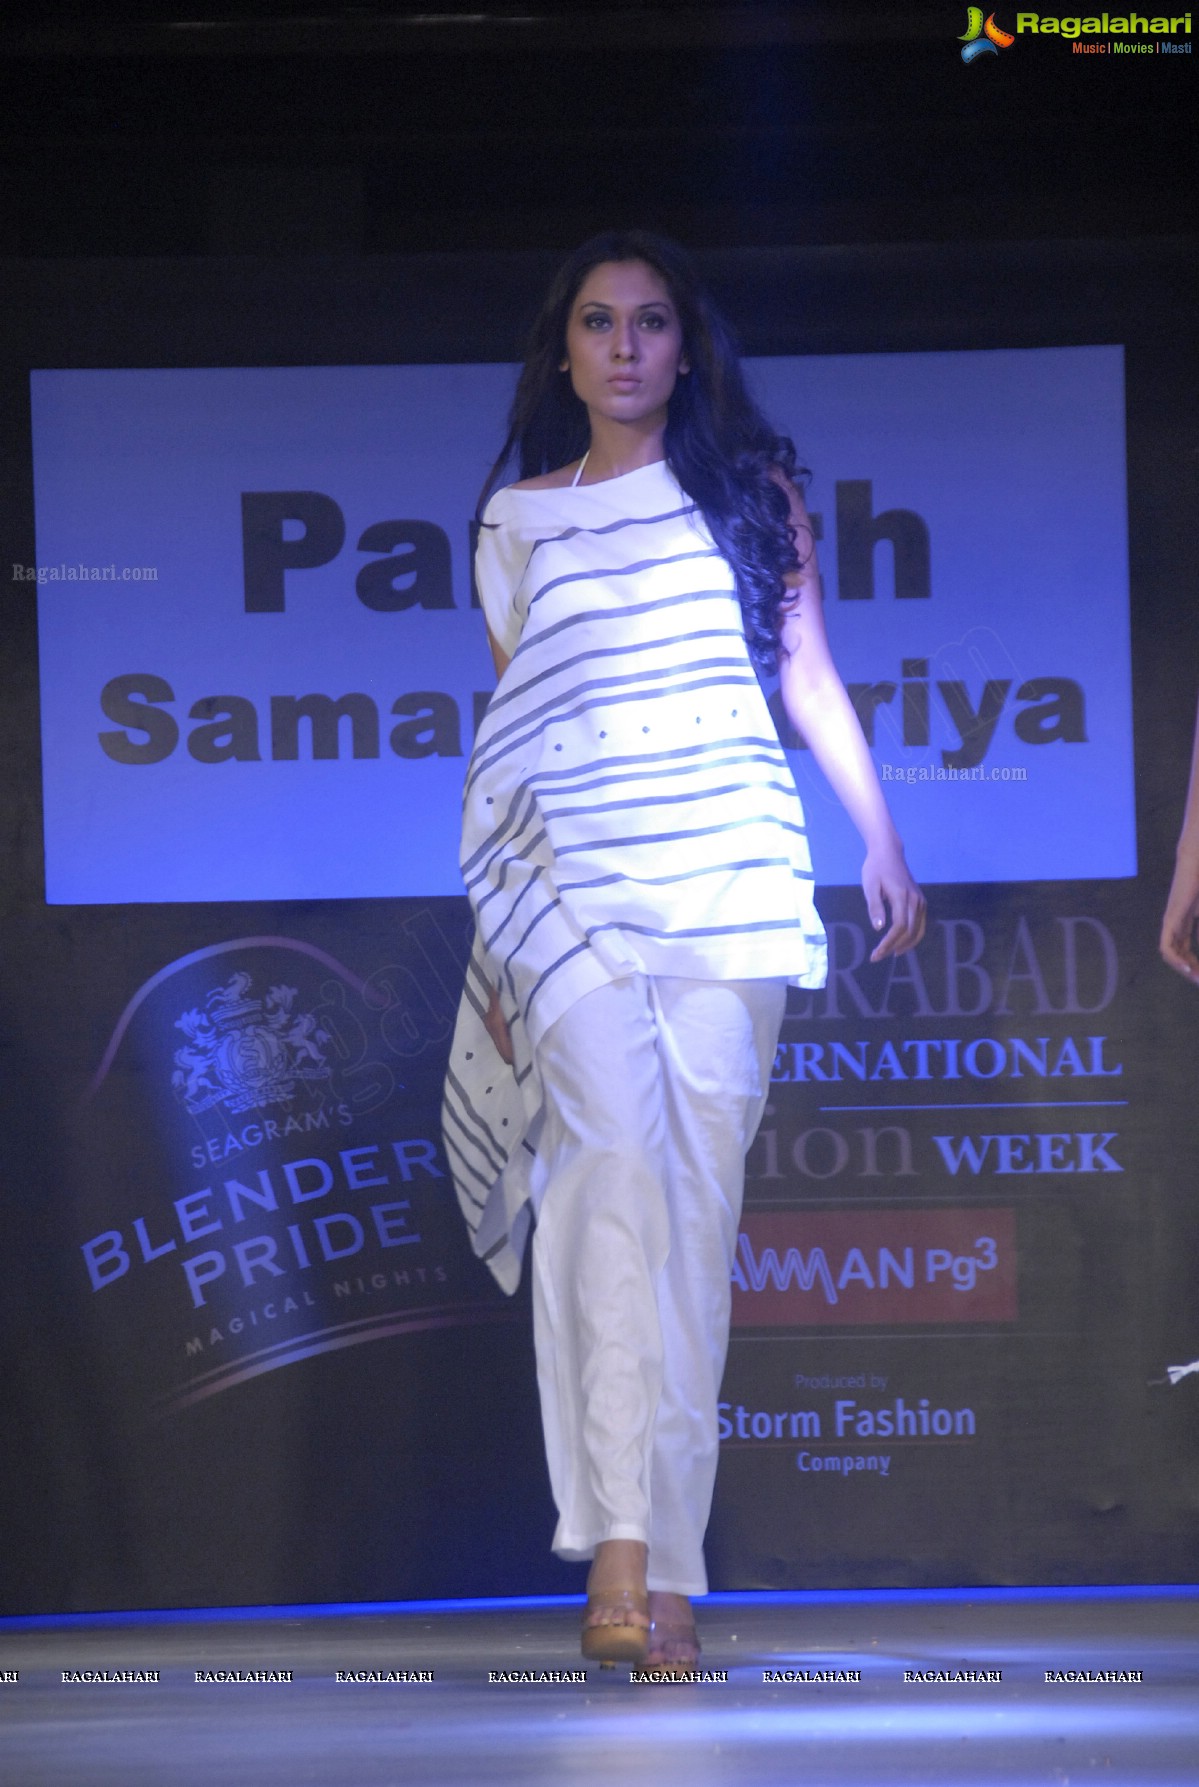 Hyderabad International Fashion Week 2011 (Day 4)